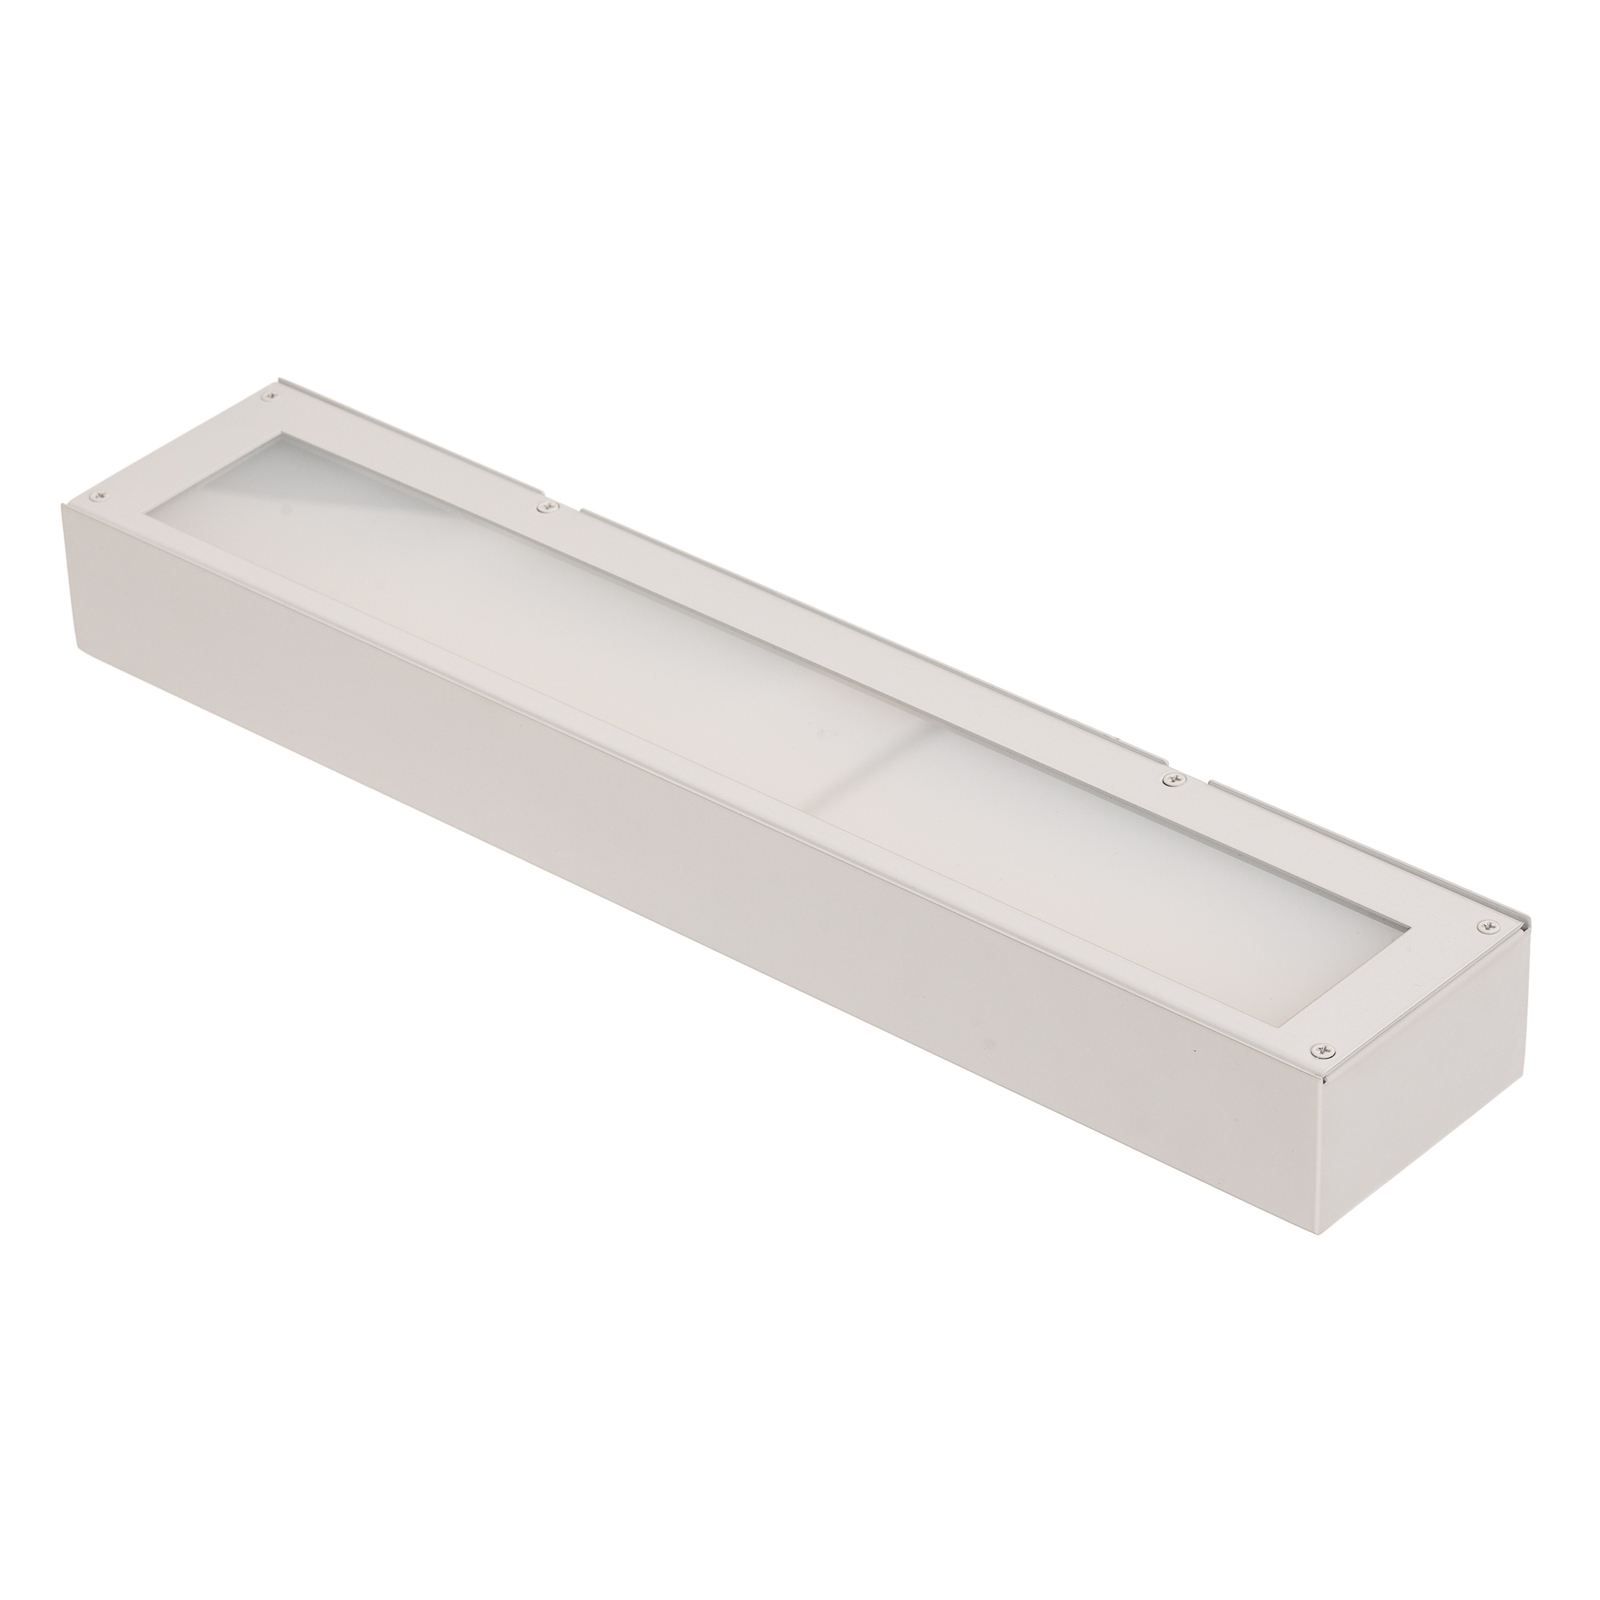 Mera LED wall light, width 40 cm, white, 4,000K